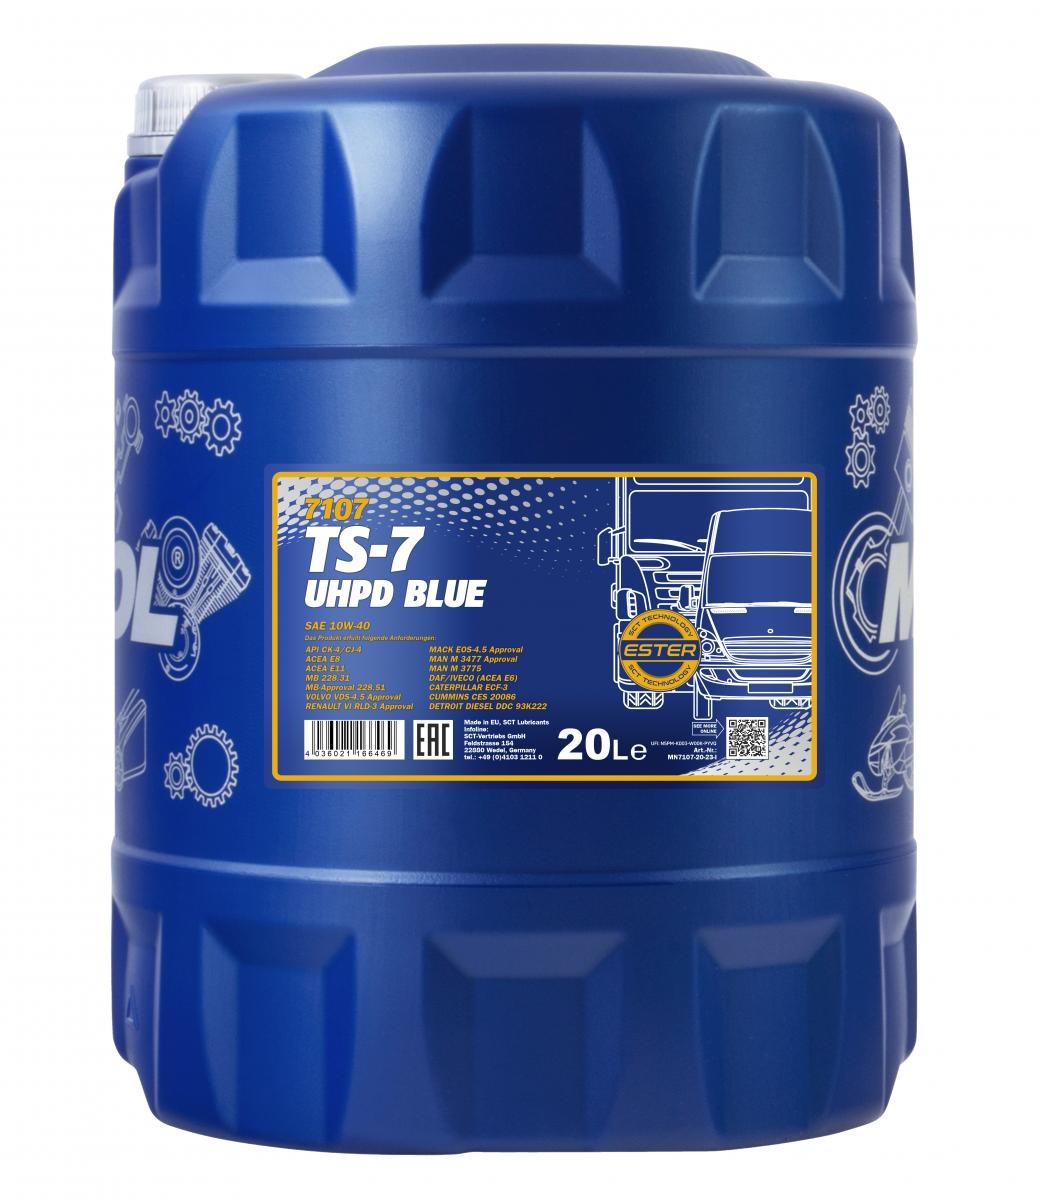 MN7107-20 MANNOL TS-7, UHPD Blue 10W-40, 20l Motoröl MN7107-20 günstig kaufen